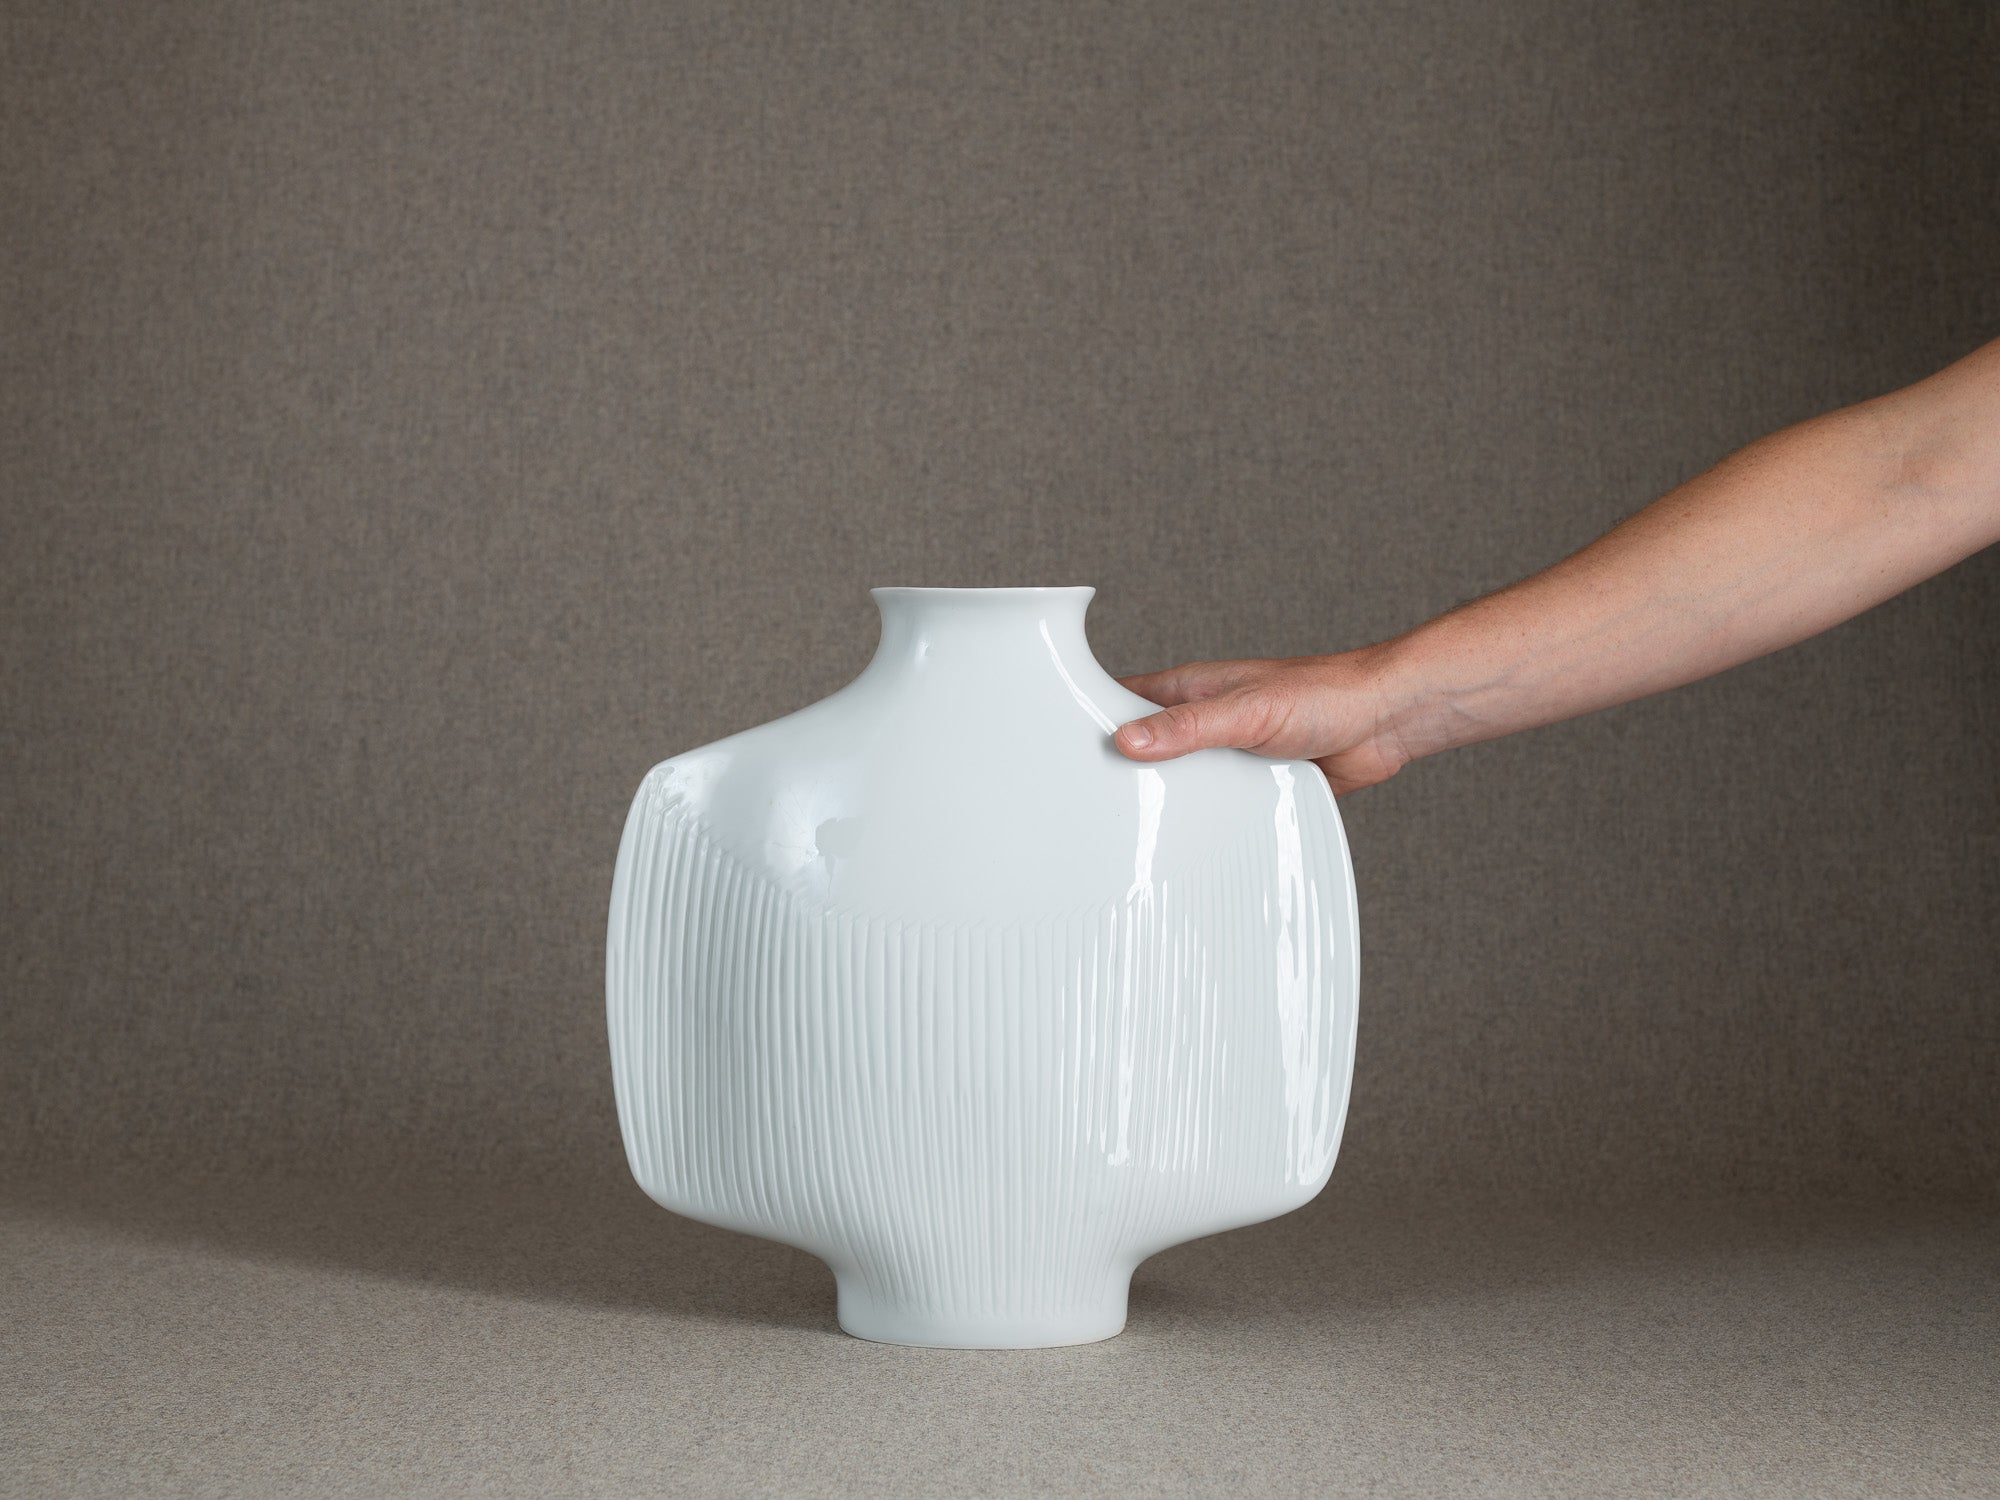 Vase en porcelaine d'Yves Mohy pour Virebent, France (vers 1969-70)..Porcelain vase by Yves Mohy for Virebent, France (circa 1969-70)